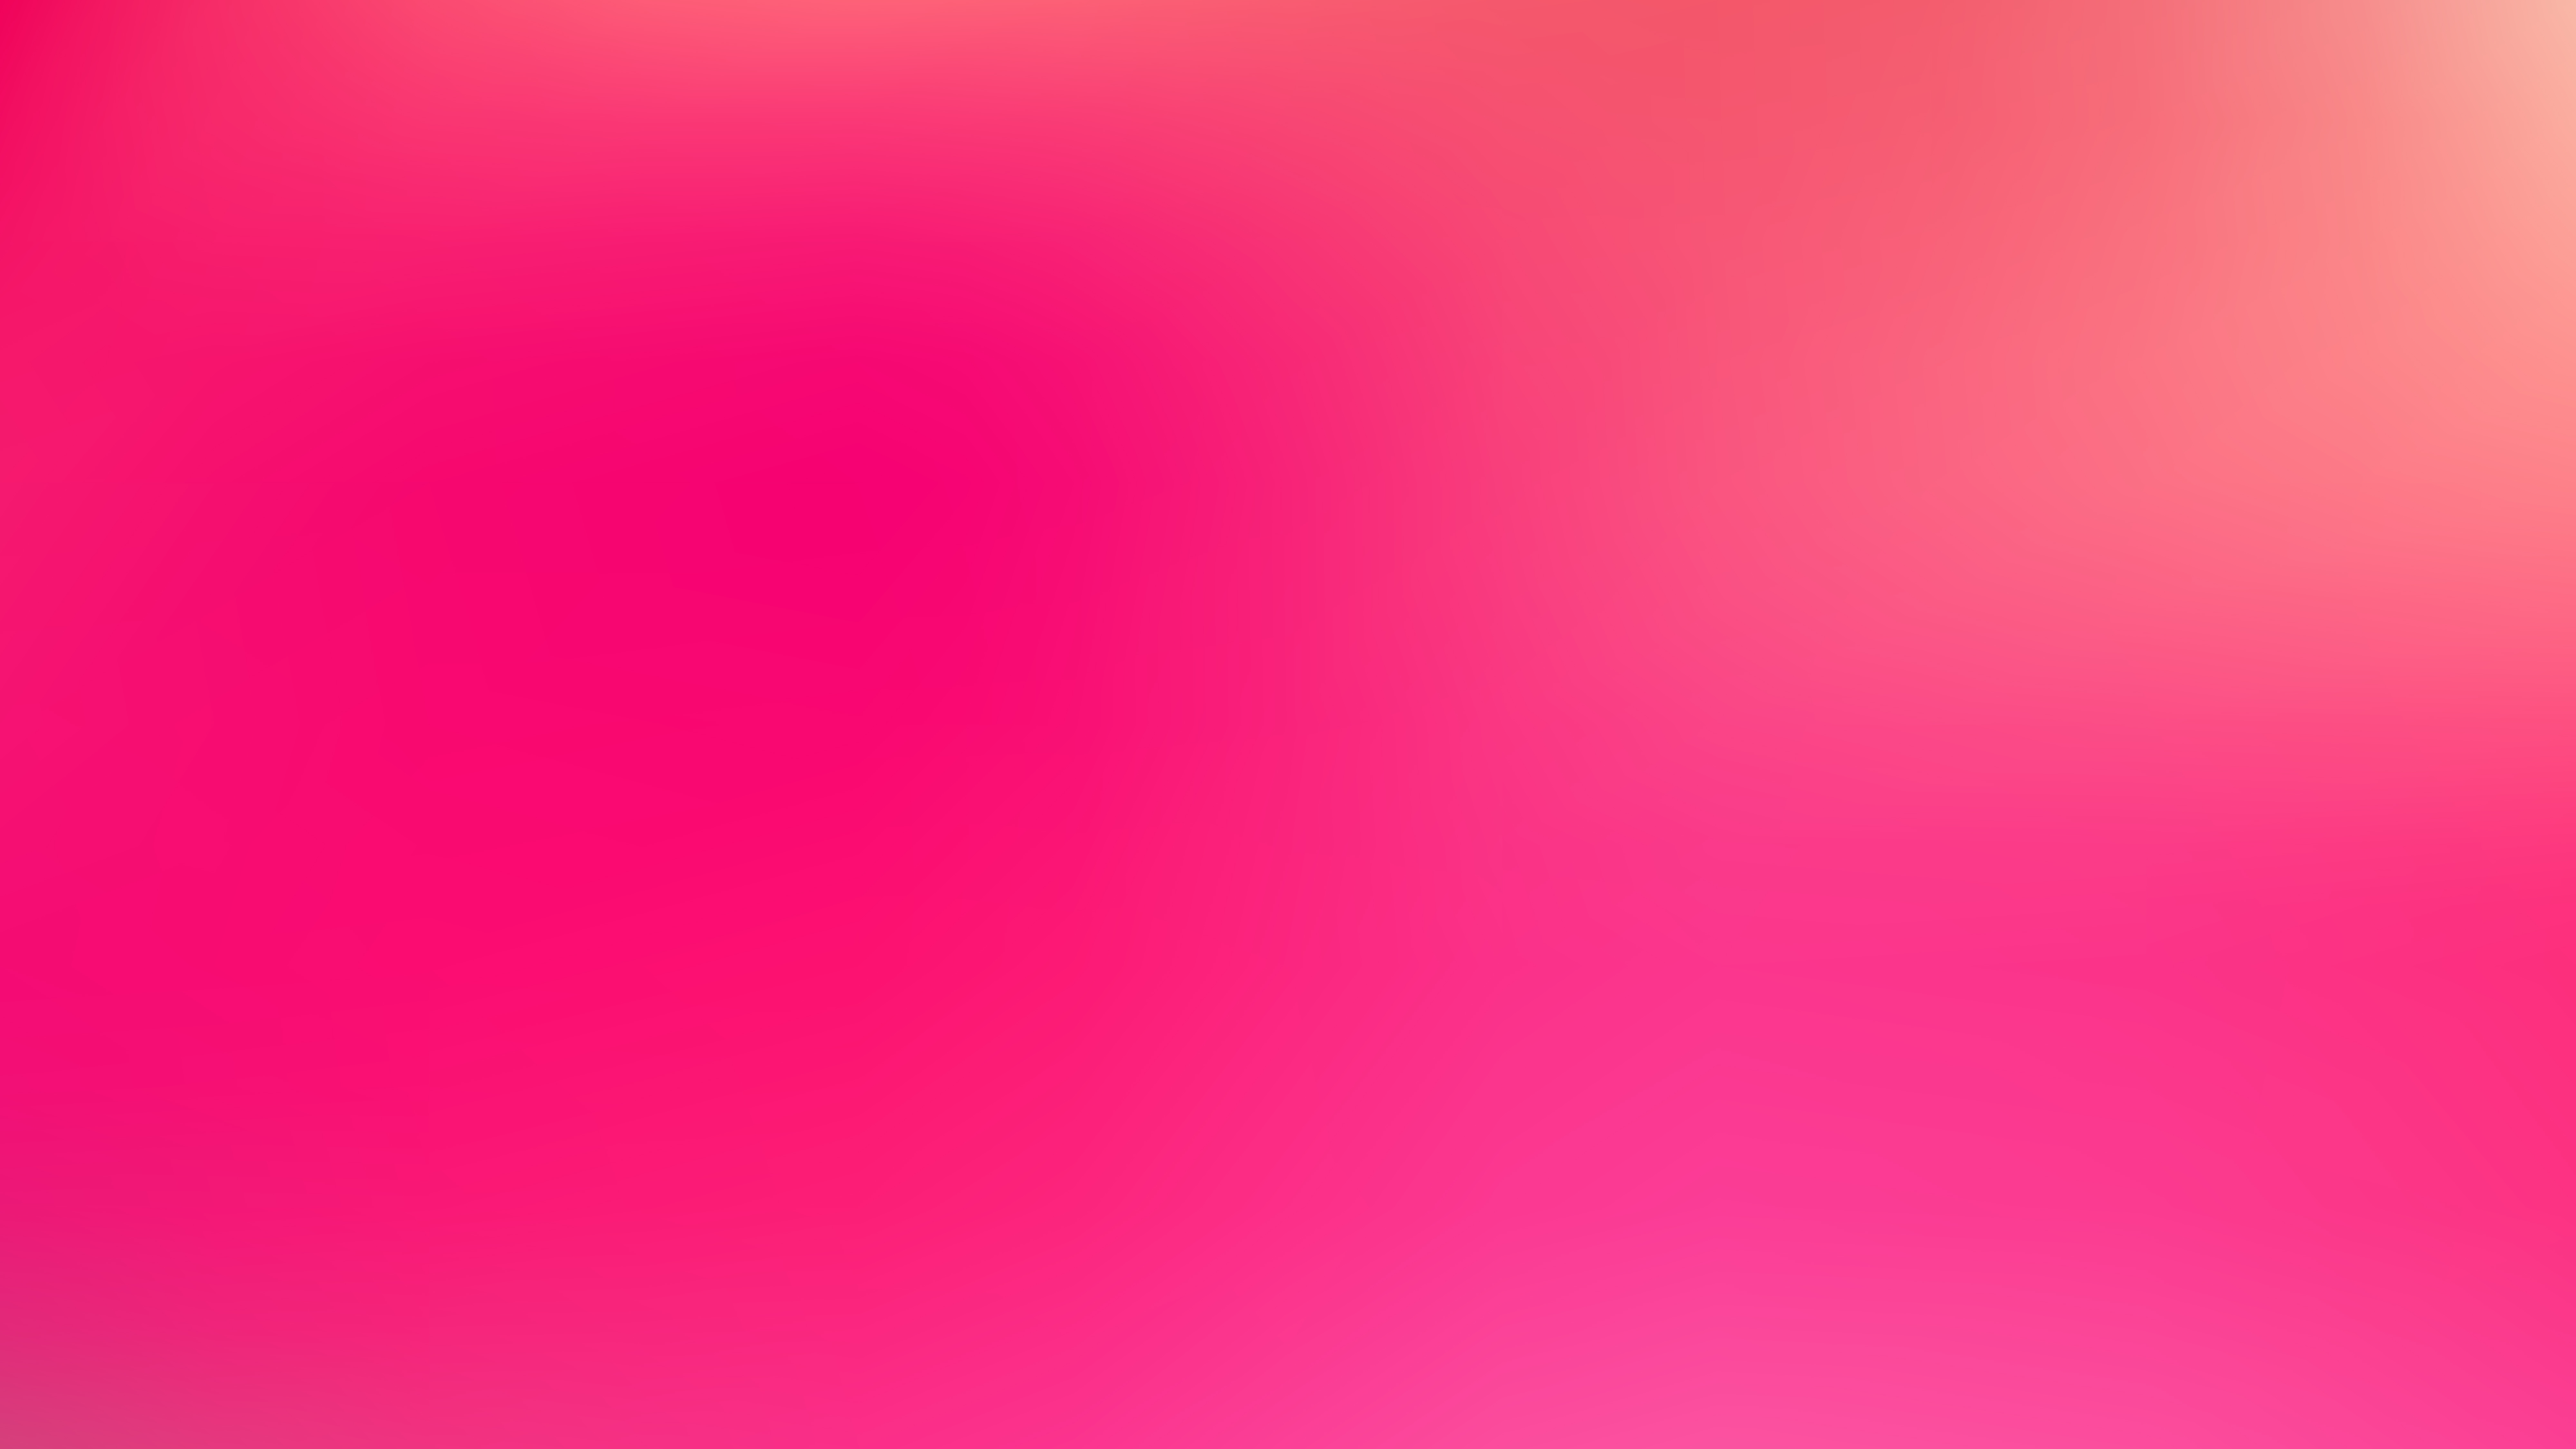 Details 100 pink blur background - Abzlocal.mx